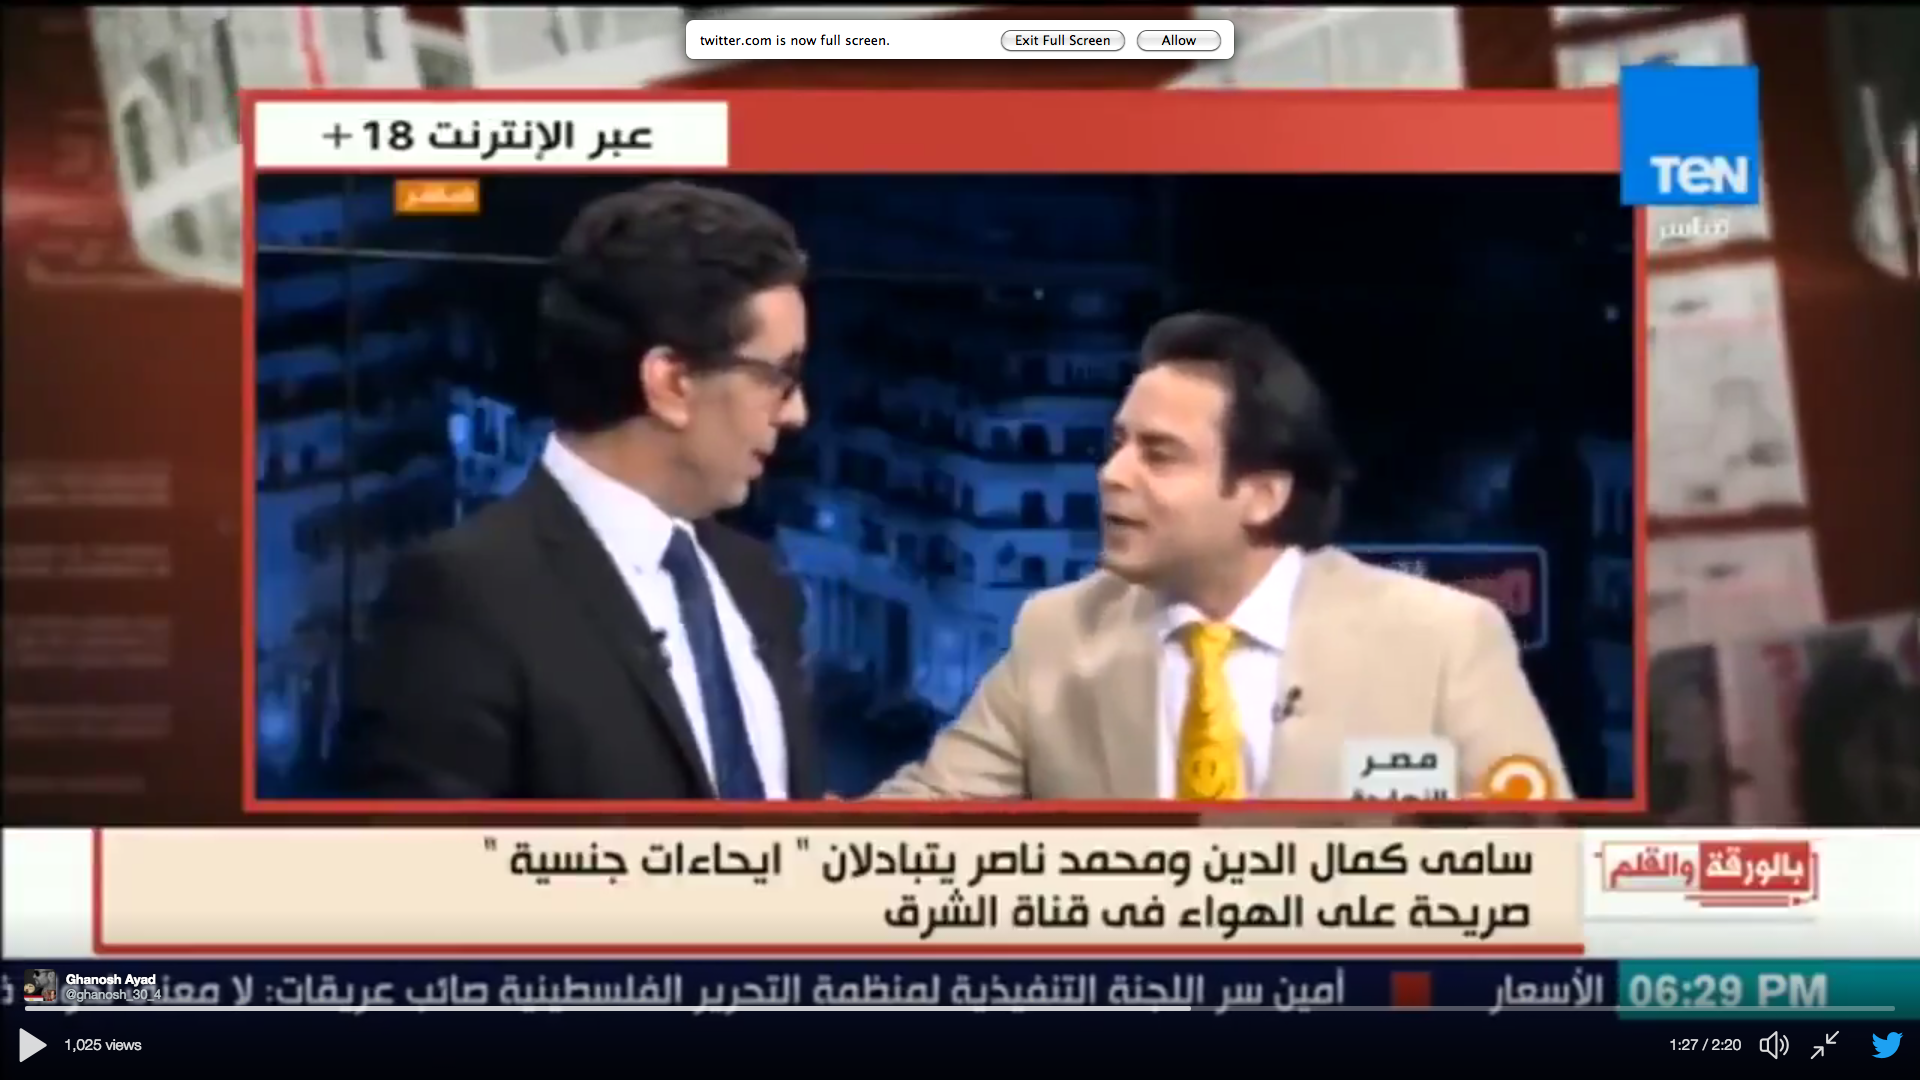   سامى كمال الدين يطلب من محمد ناصر أن يحتويه.. فيديو+18